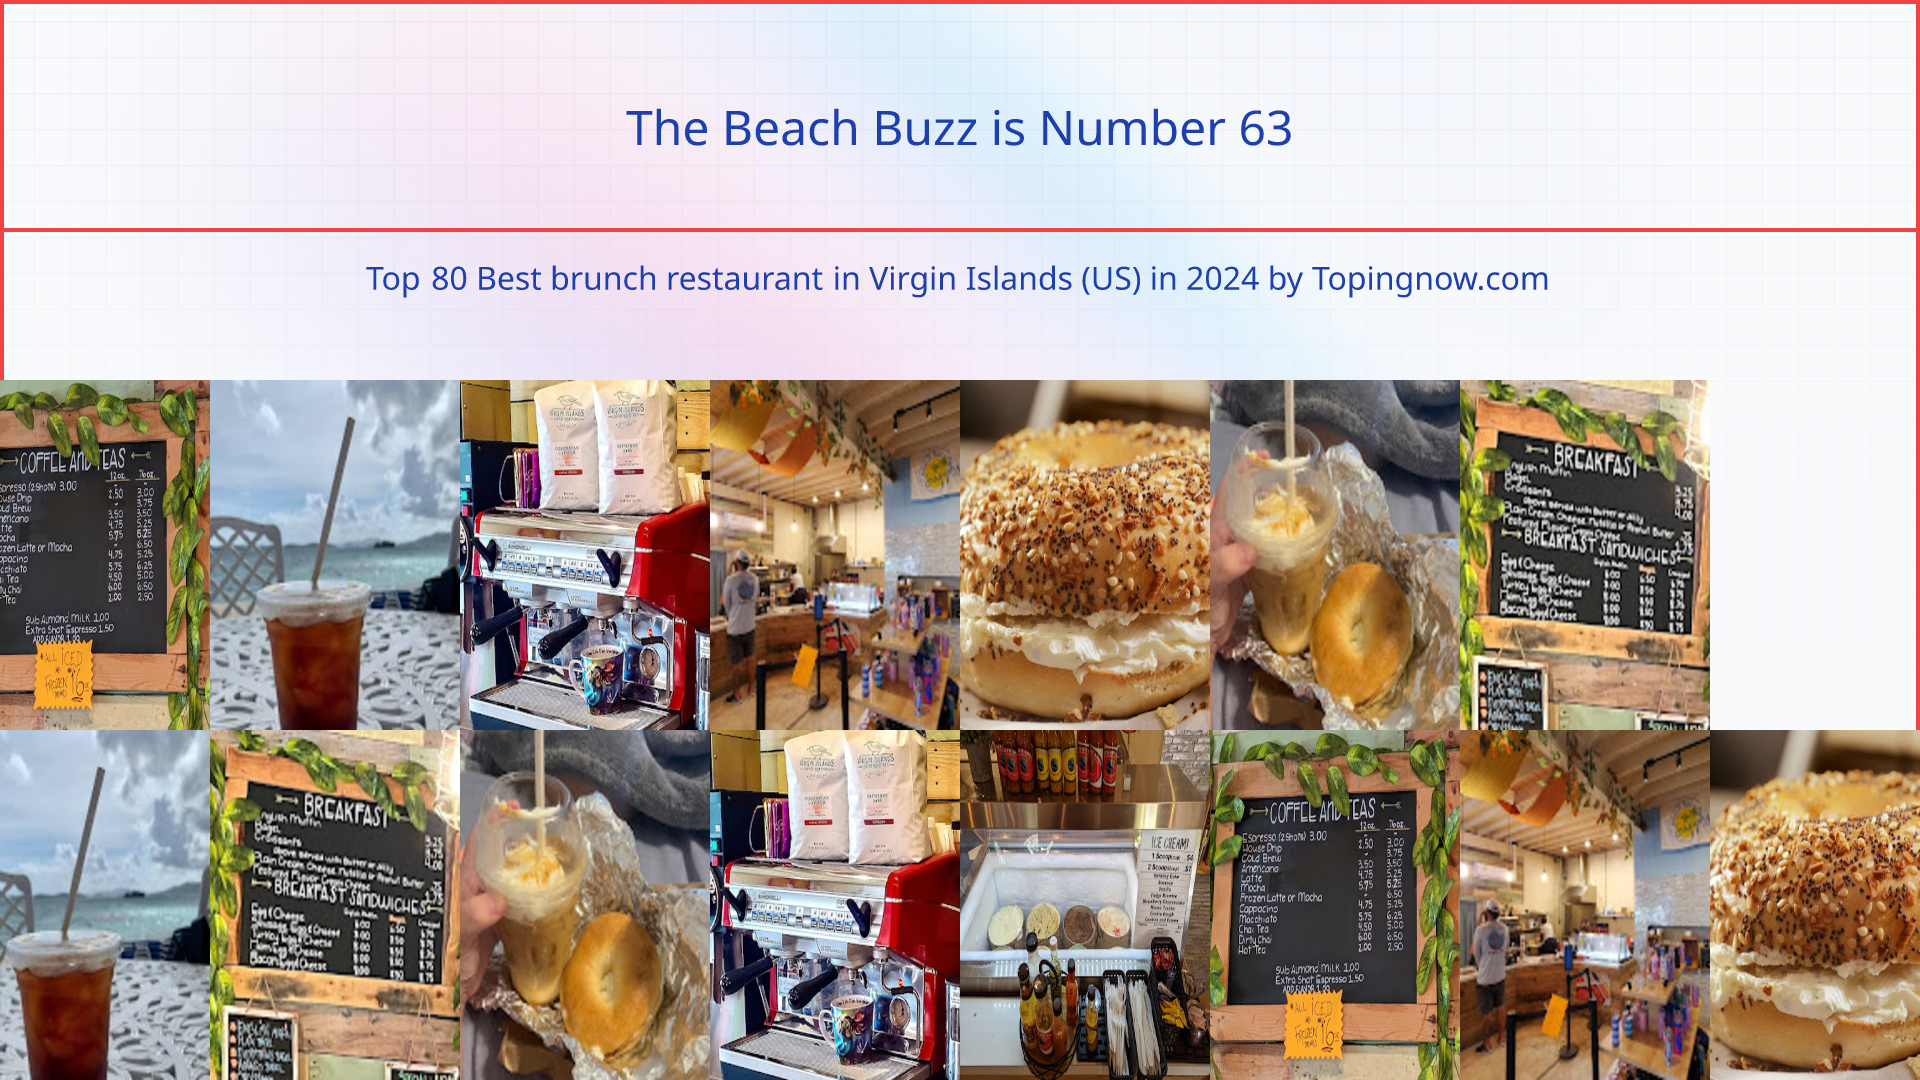 The Beach Buzz: Top 80 Best brunch restaurant in Virgin Islands (US) in 2024